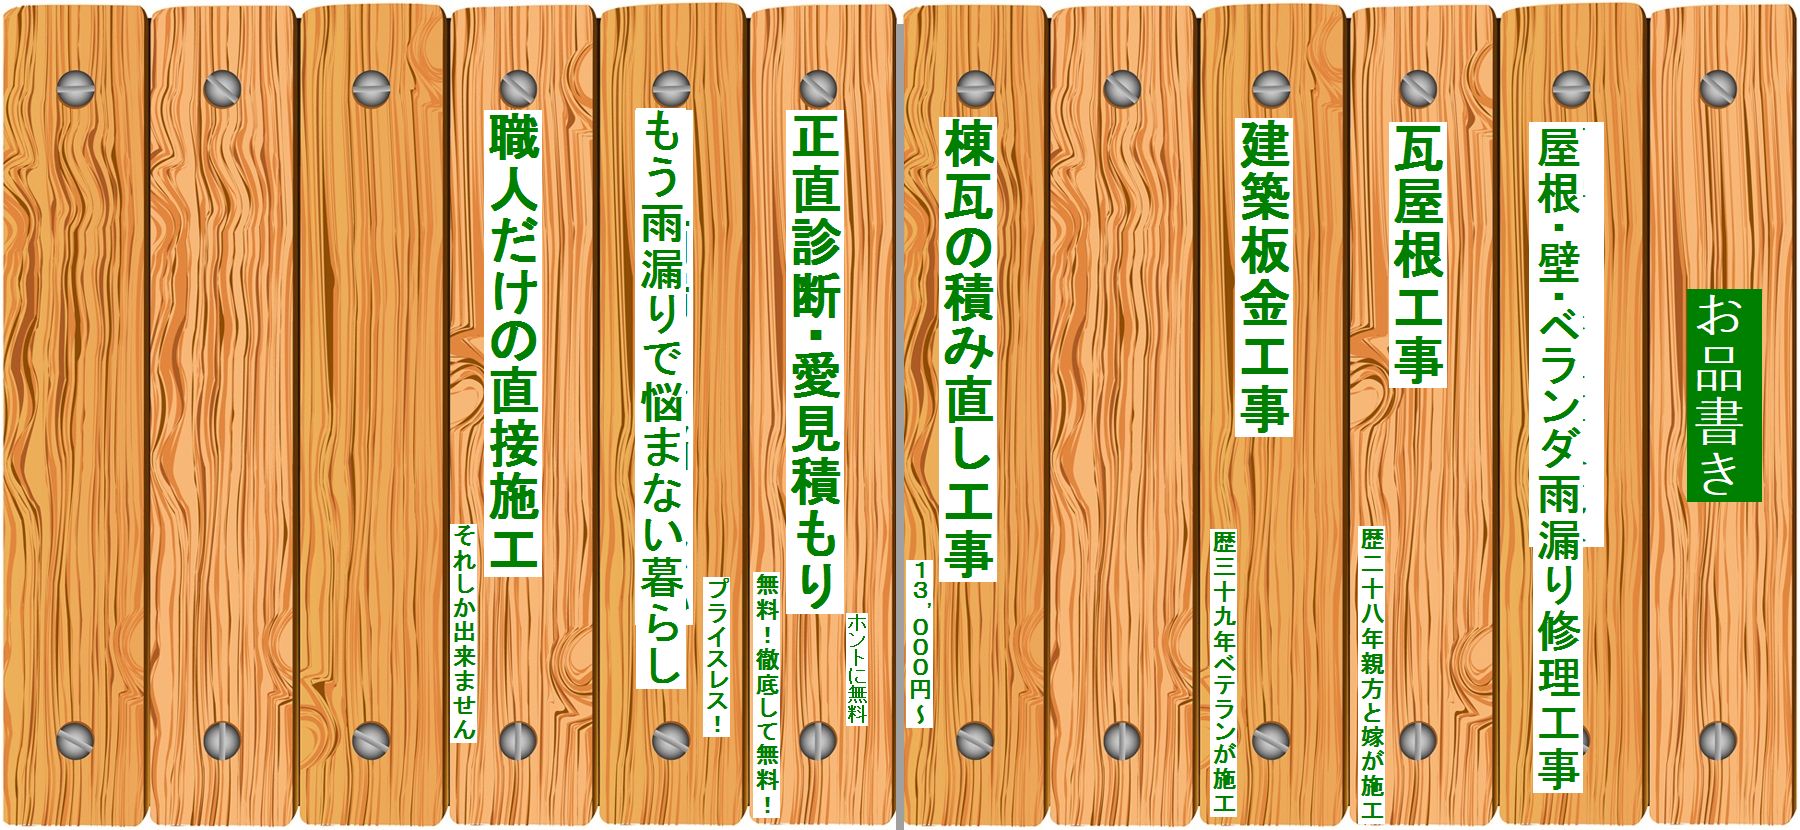 木目調のネジ止めした横板の背景 Grain Texture Wood Background イラスト素材 大阪で雨漏り修理をがんばる工事人の店